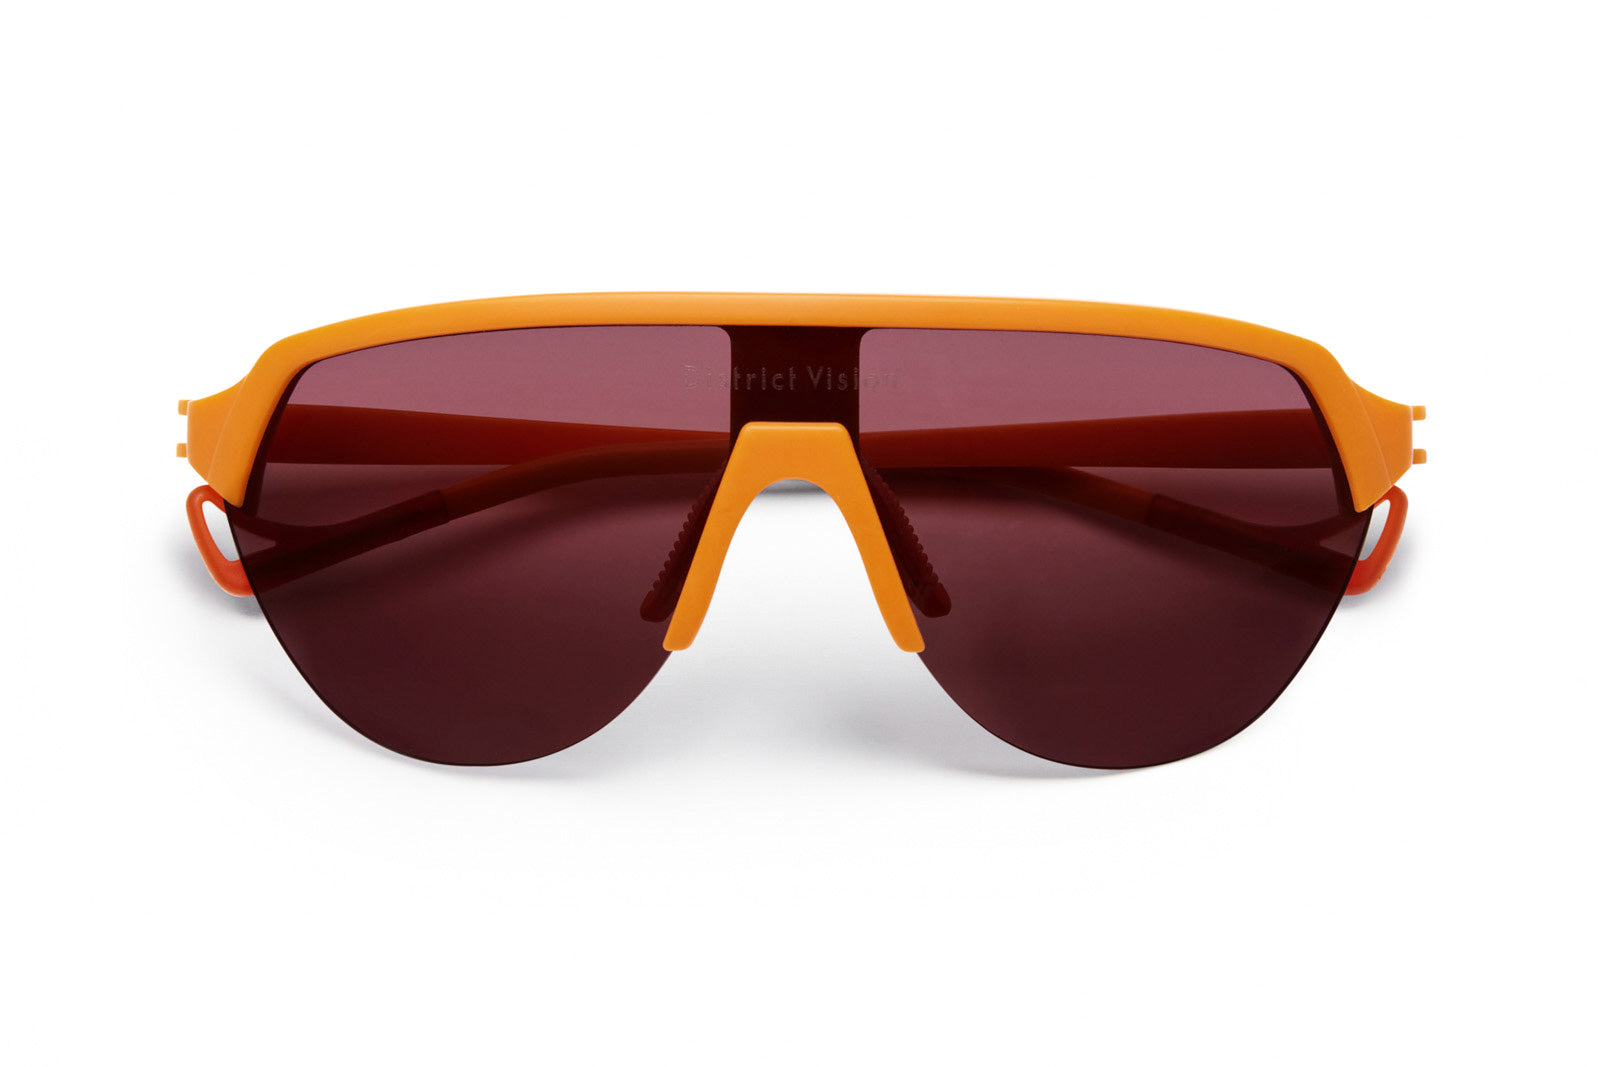 District Vision | Nagata Speed Blade Sunglasses - twelvesixtynine